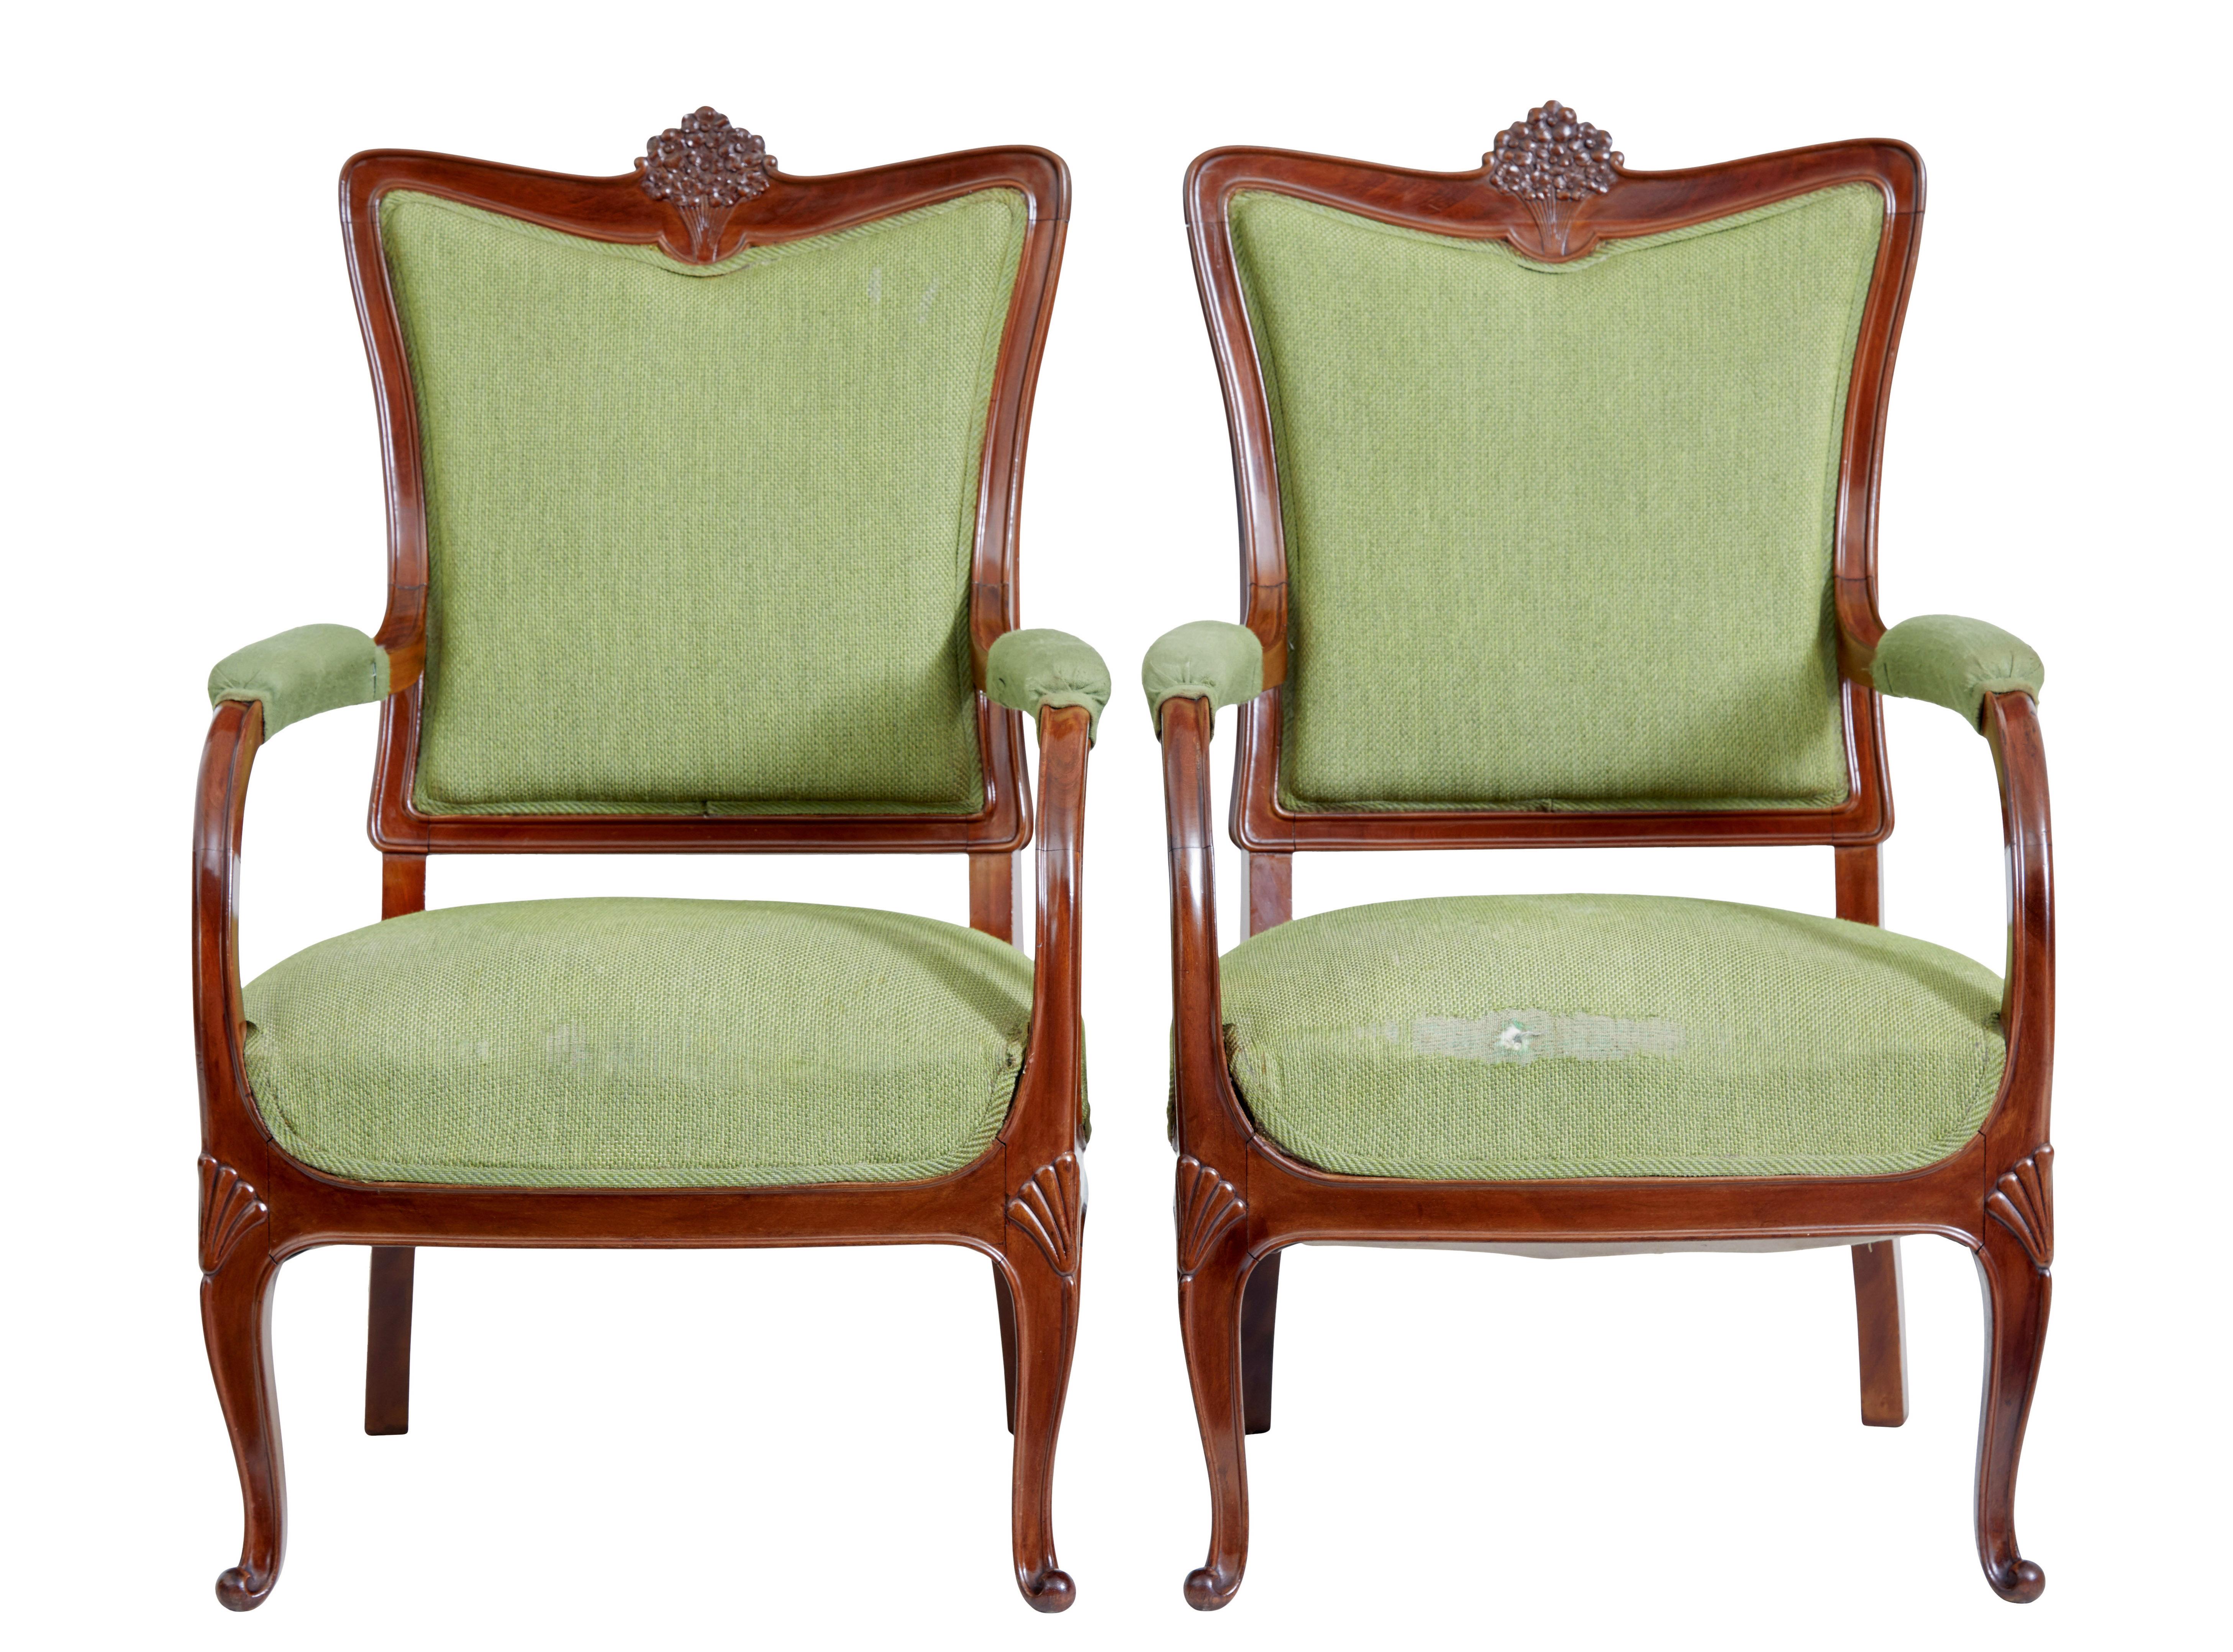 Satz von 6 geschnitzten Esszimmerstühlen aus der Mitte des 20. Jahrhunderts, um 1940.

Hochwertiger Satz schwedischer Esszimmerstühle, bestehend aus 2 Carver-Sesseln und 4 Einzelstühlen.

Aus nussbaumähnlich gebeizter Buche, mit kontrastierendem